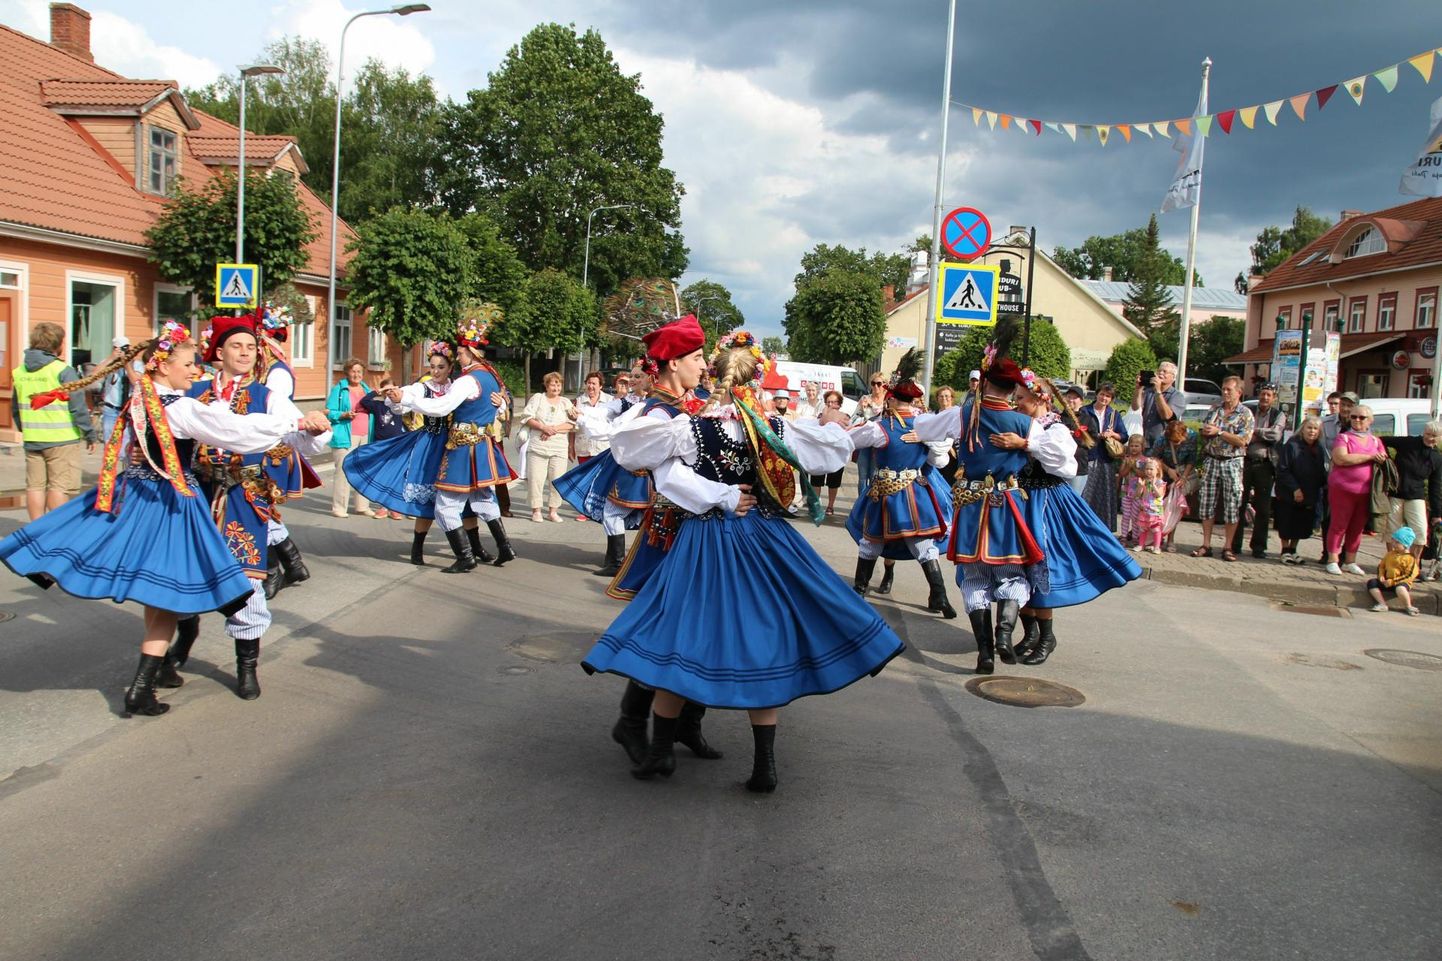 Festivali avaparaad on toonud linnatänavatele uhkeid tantsunumbreid. Tänavu traditsioonilist rongkäiku ega avakontserti
aga pole.